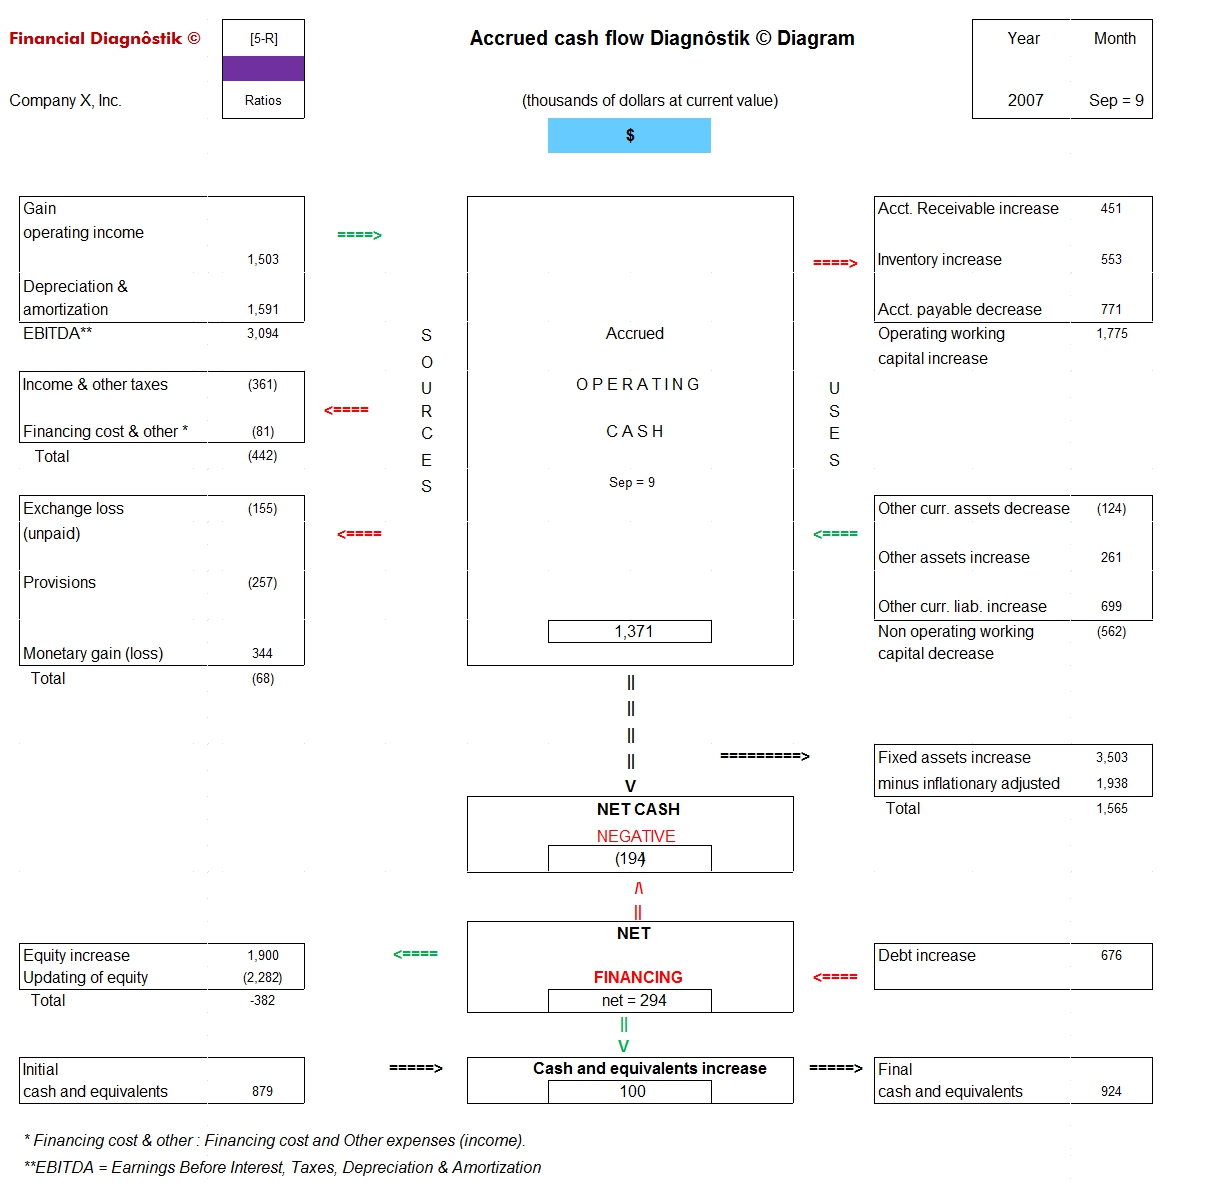 Financial Diagnôstik© — Financial Diagnôstik's diagram